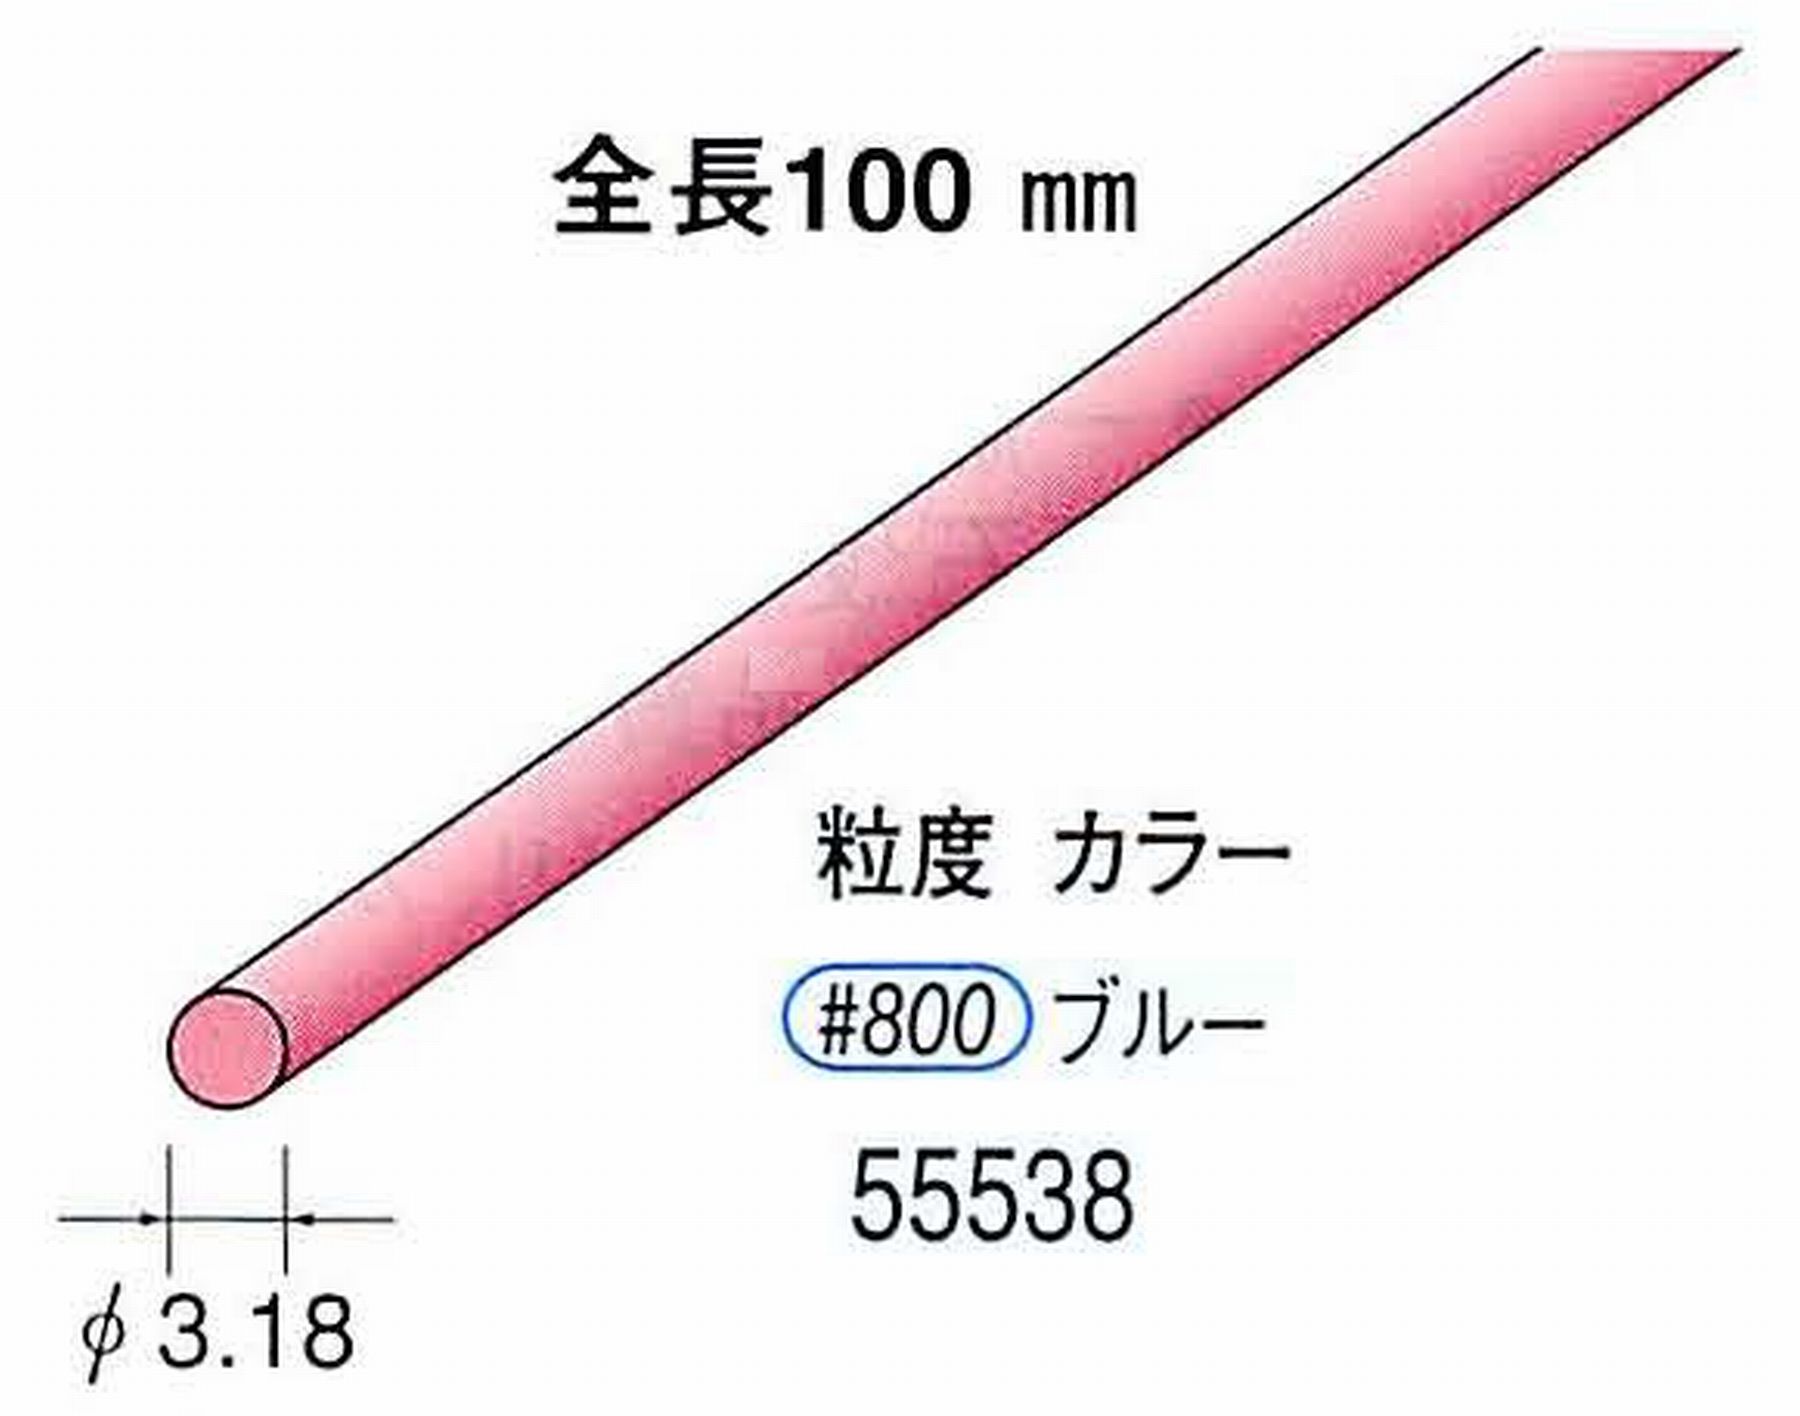 ナカニシ/NAKANISHI セラファイバー砥石 全長100mm ブルー φ3.18mm 55538